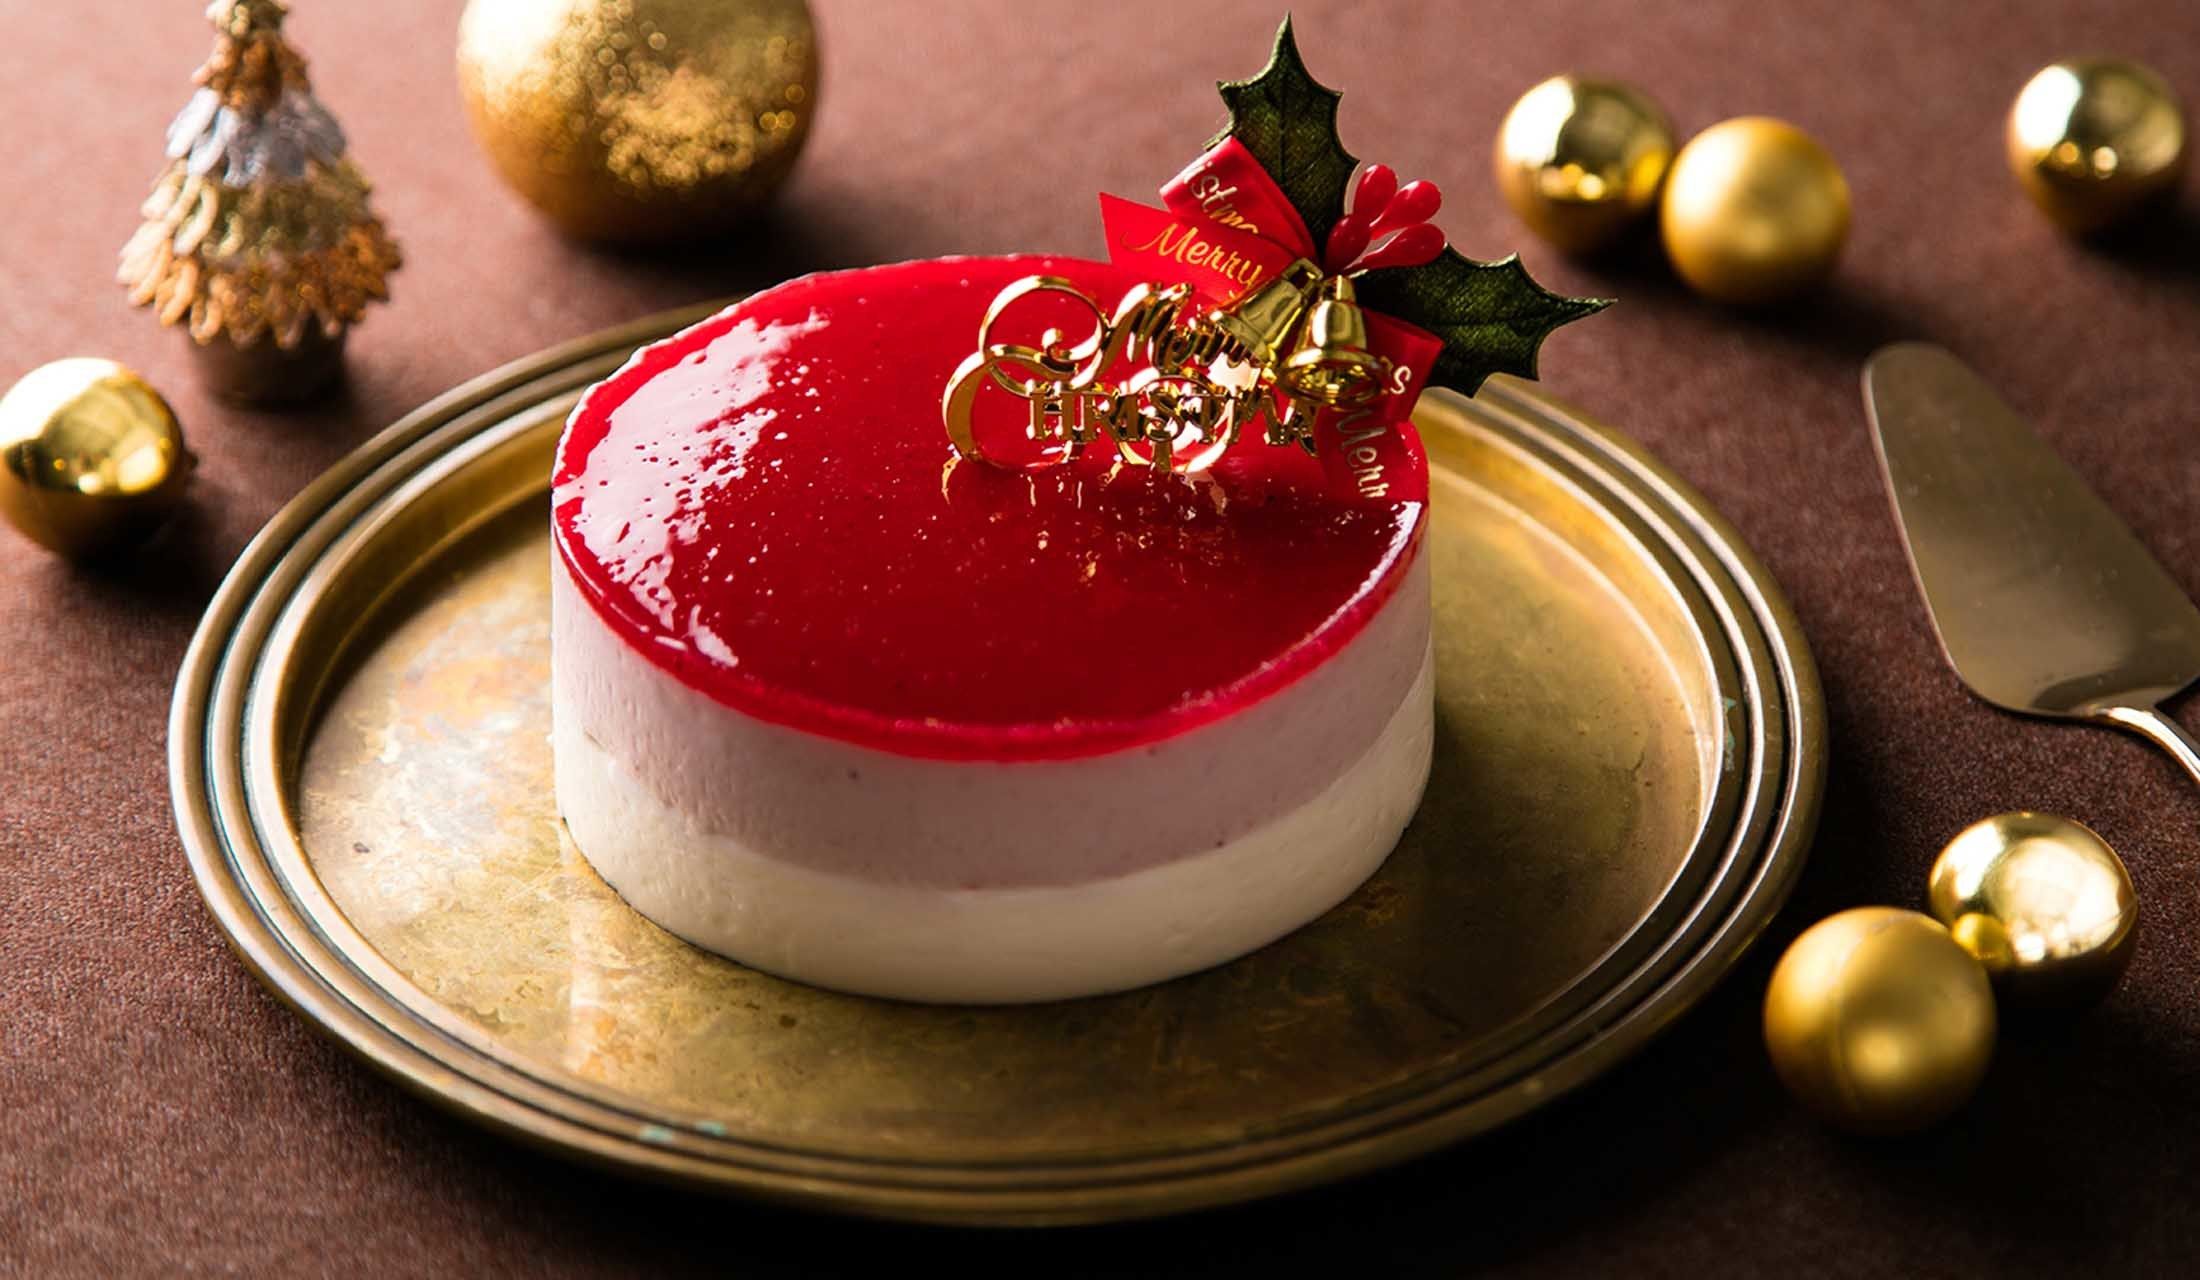 ライザップからダイエット中でもokなヘルシーケーキが登場 クリスマスケーキ17 Precious Jp プレシャス